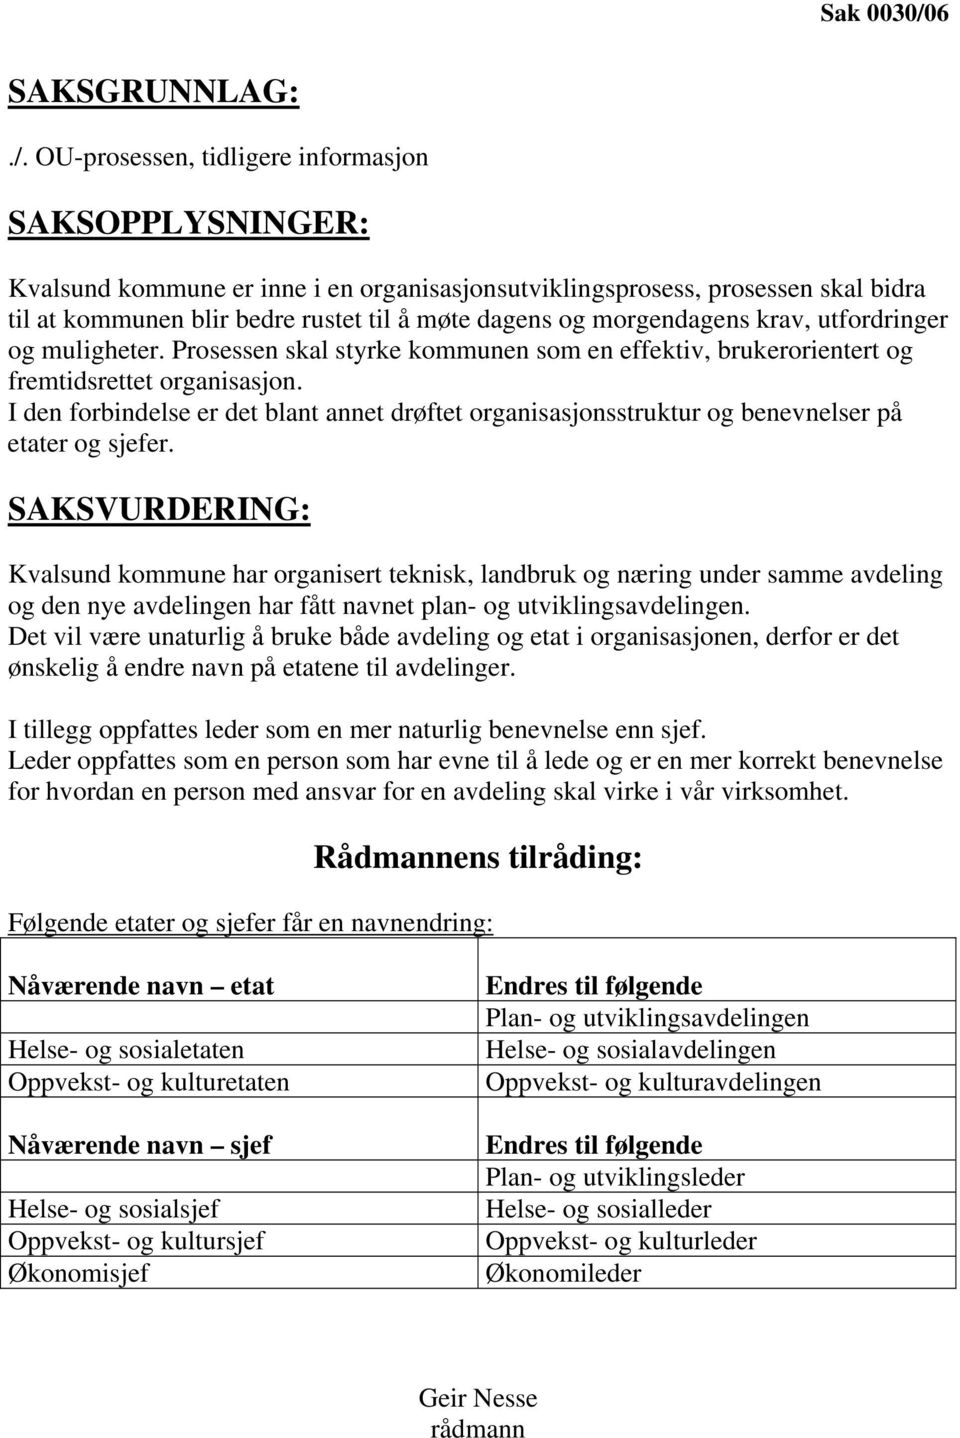 OU-prosessen, tidligere informasjon SAKSOPPLYSNINGER: Kvalsund kommune er inne i en organisasjonsutviklingsprosess, prosessen skal bidra til at kommunen blir bedre rustet til å møte dagens og